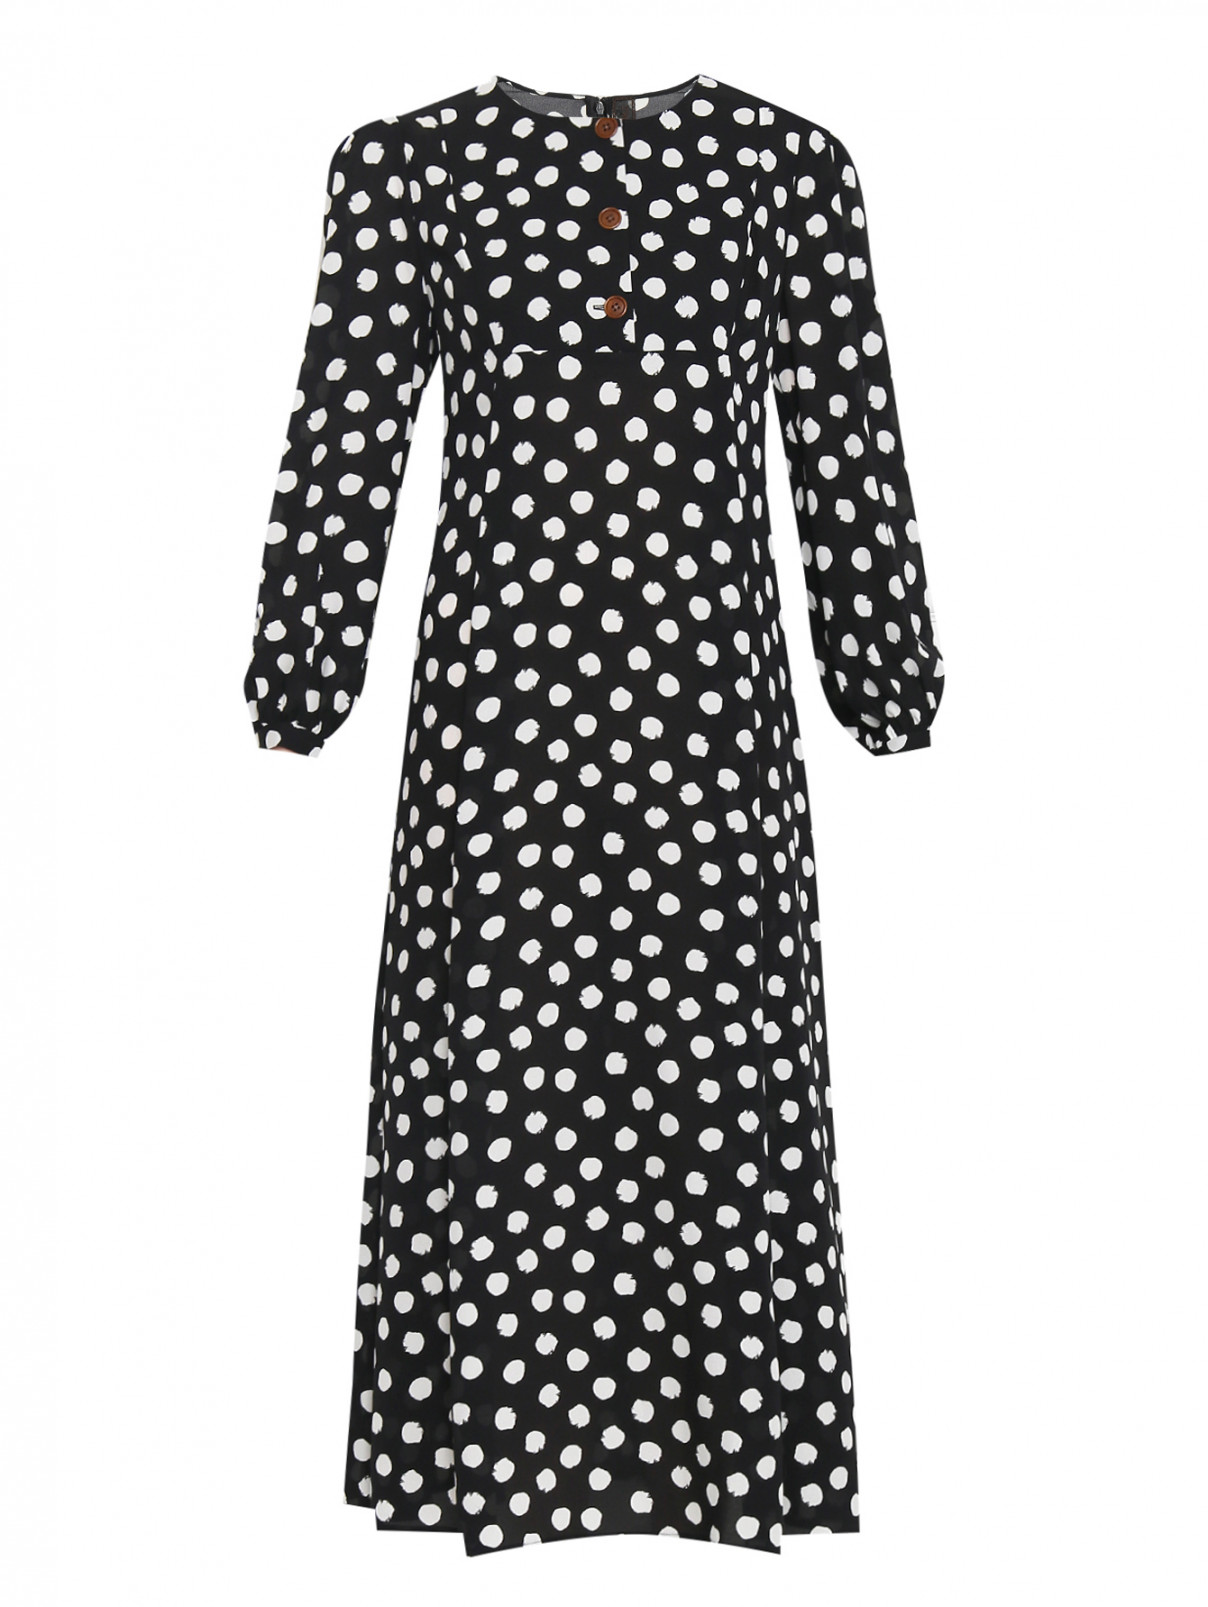 Платье из шелка с узором Ulyana Sergeenko  –  Общий вид  – Цвет:  Черный